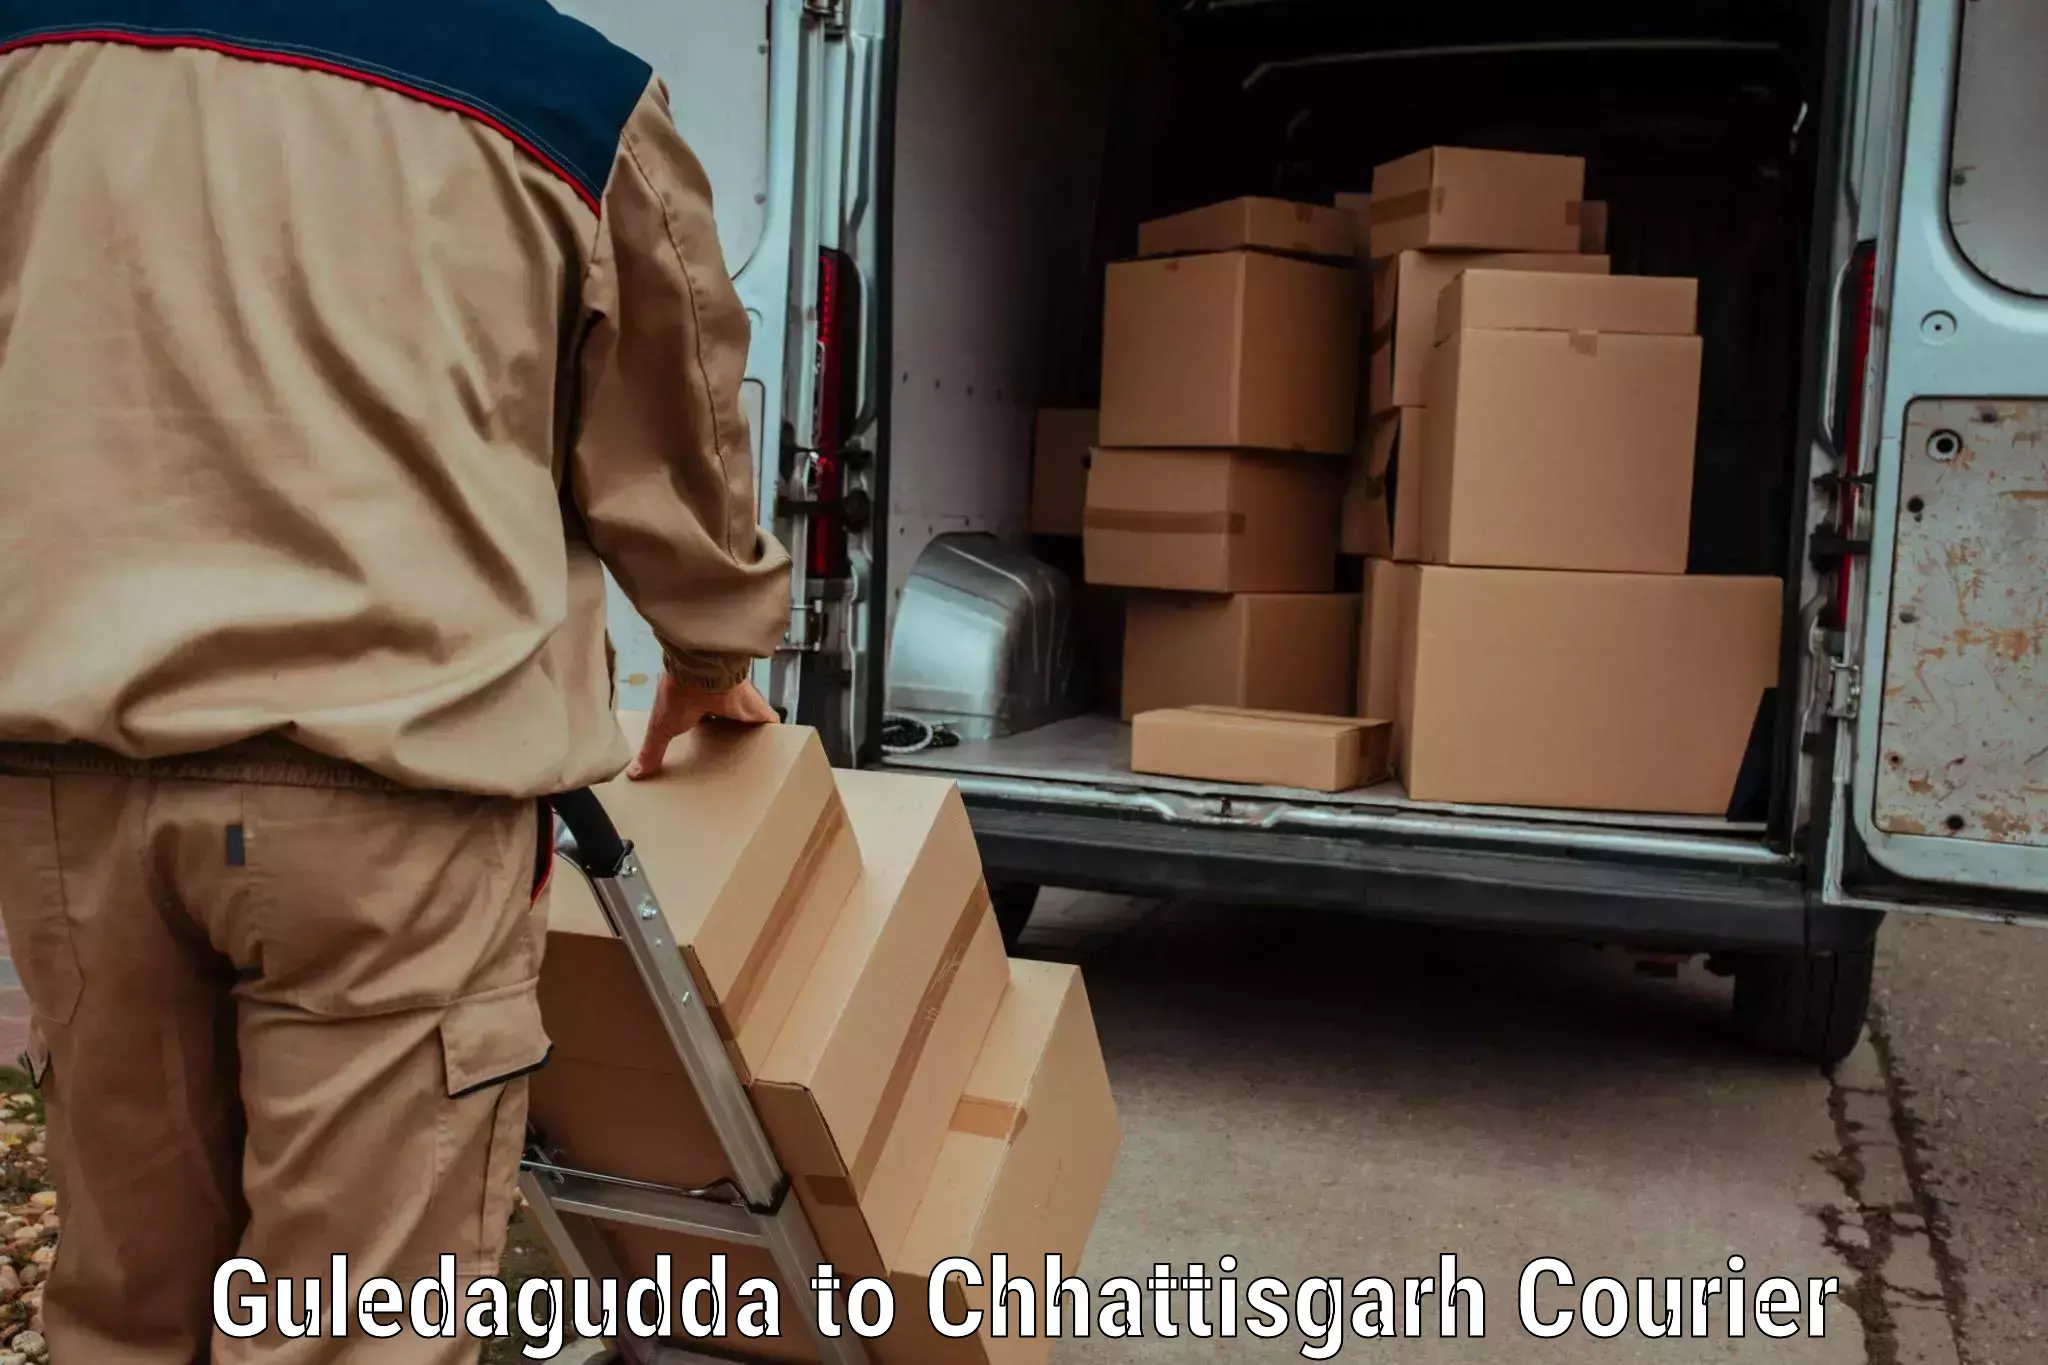 Weekend courier service Guledagudda to Manendragarh